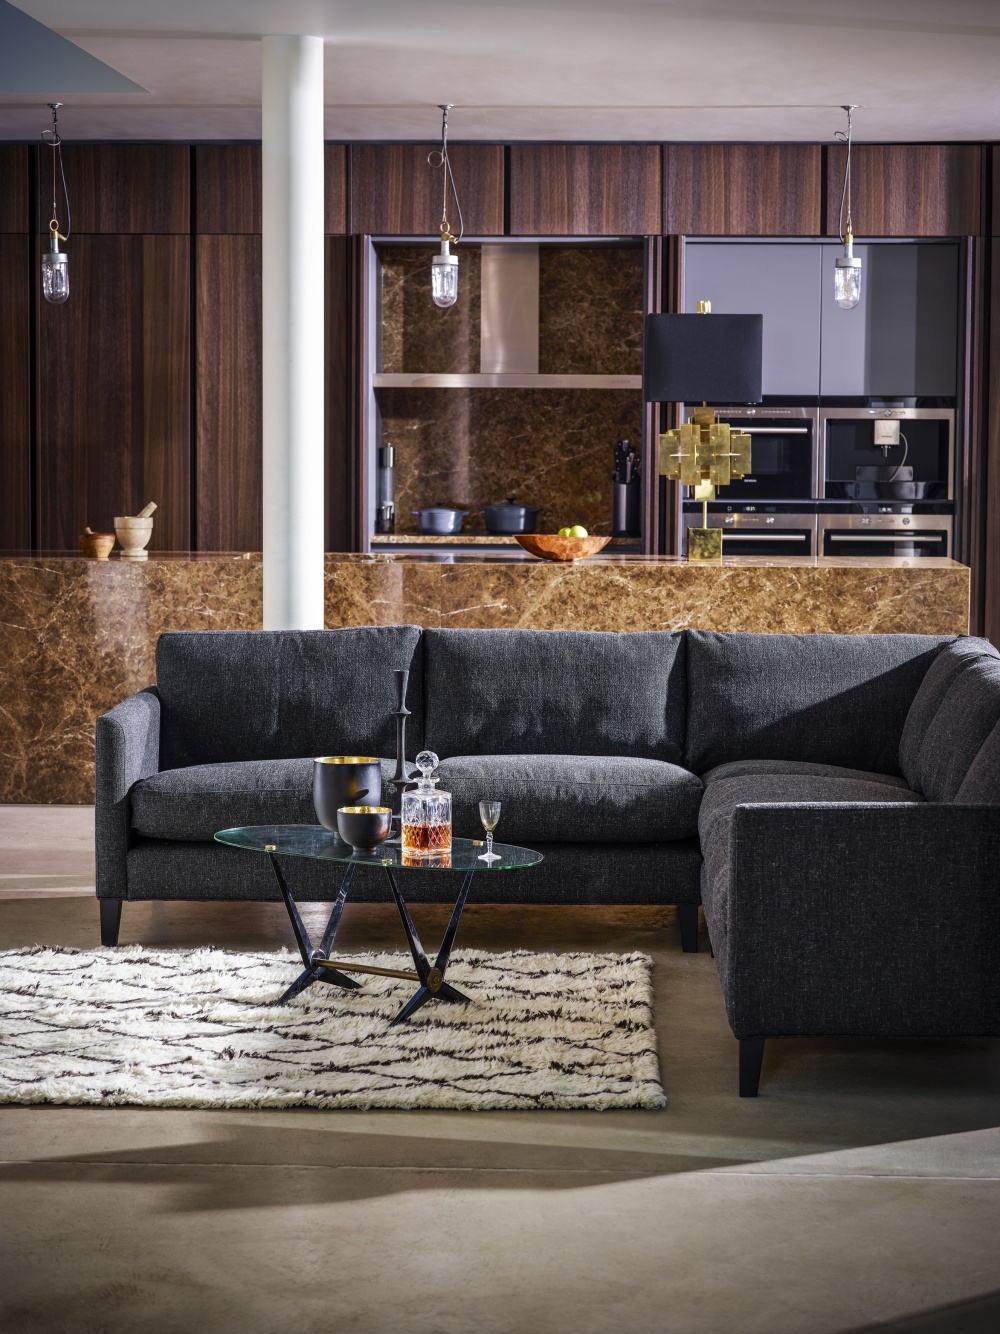 Super Comfy Sofas Your Home Needs